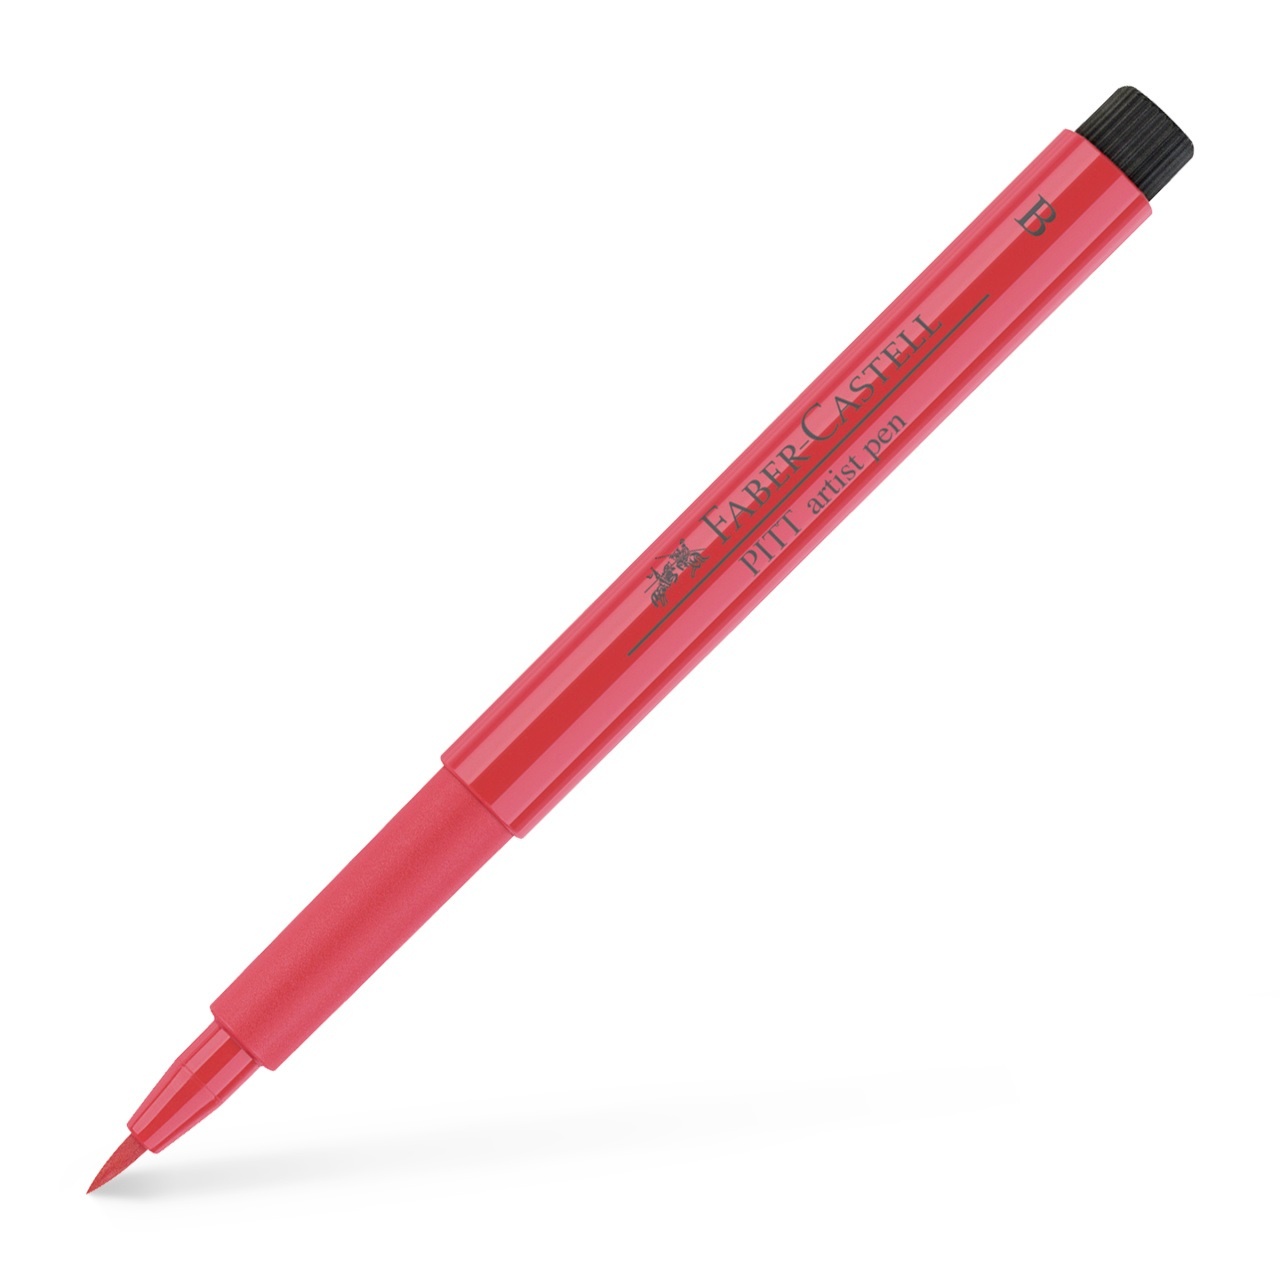 PITT Artist Brush 6-set Basic in the group Pens / Artist Pens / Brush Pens at Pen Store (105145)